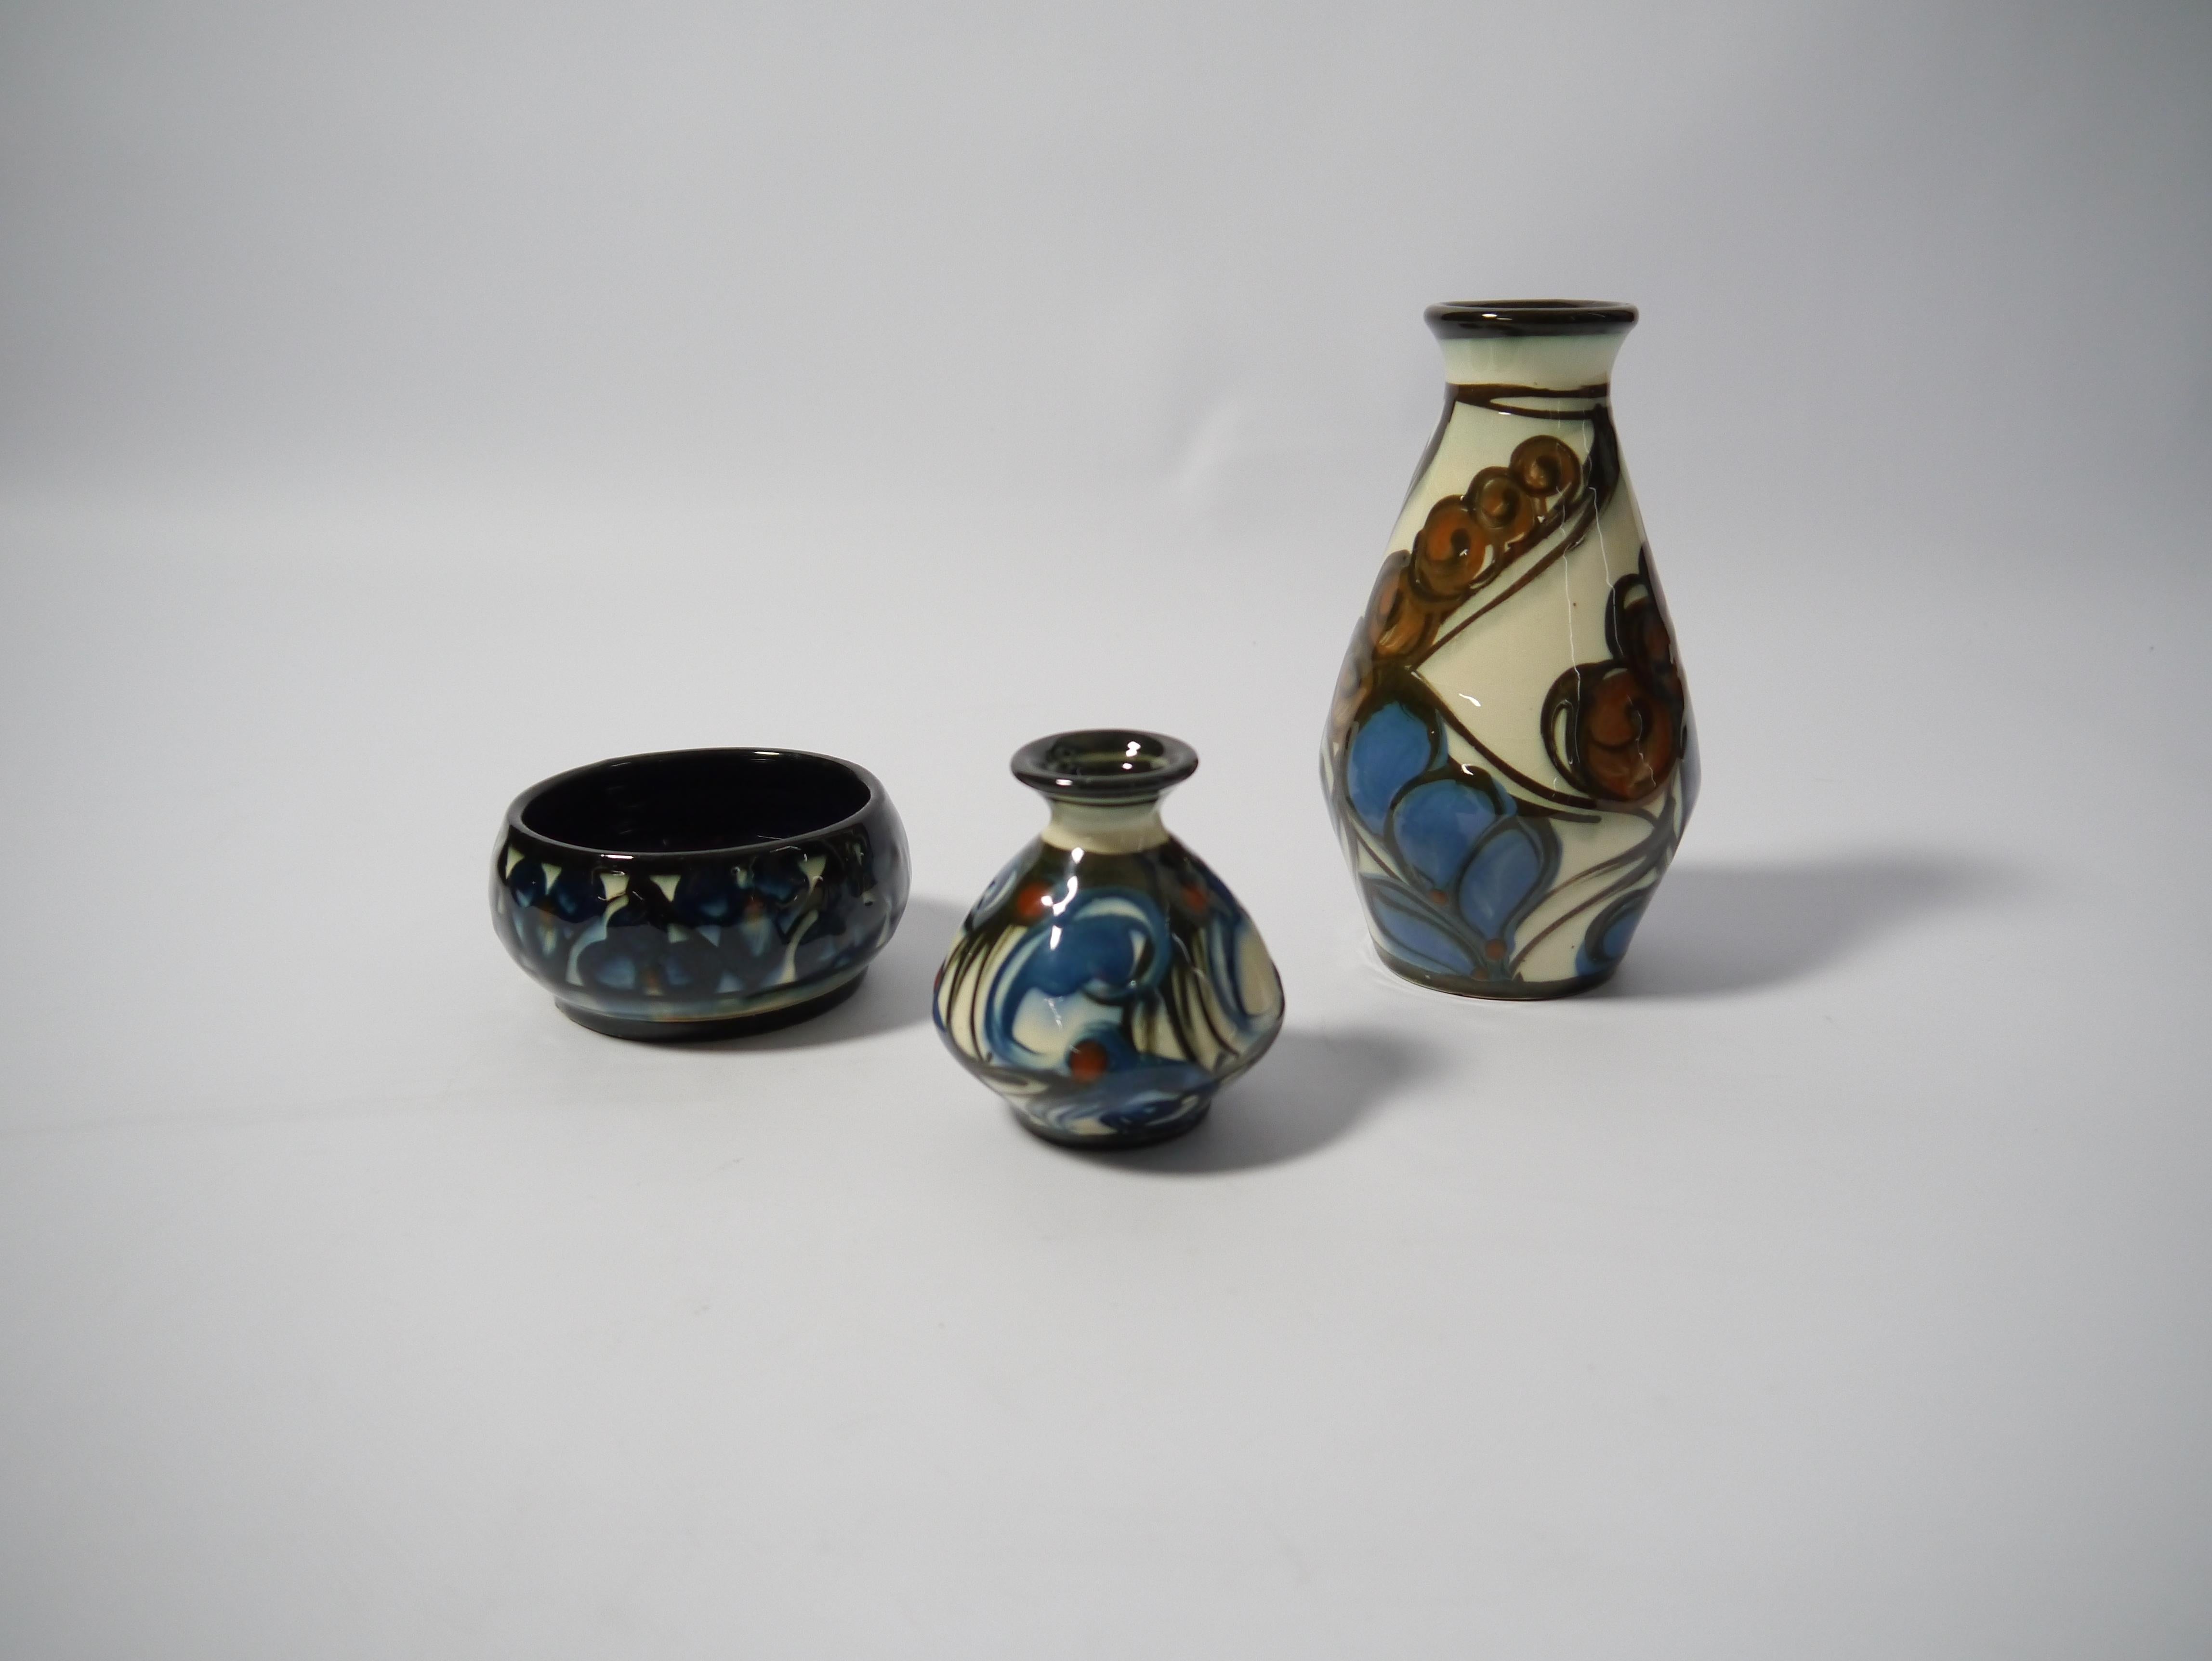 Ensemble de trois récipients en céramique Art déco, comprenant deux vases et un bol, réalisés par le studio de céramique danois Danico (1919-1929) dans les années 1920.